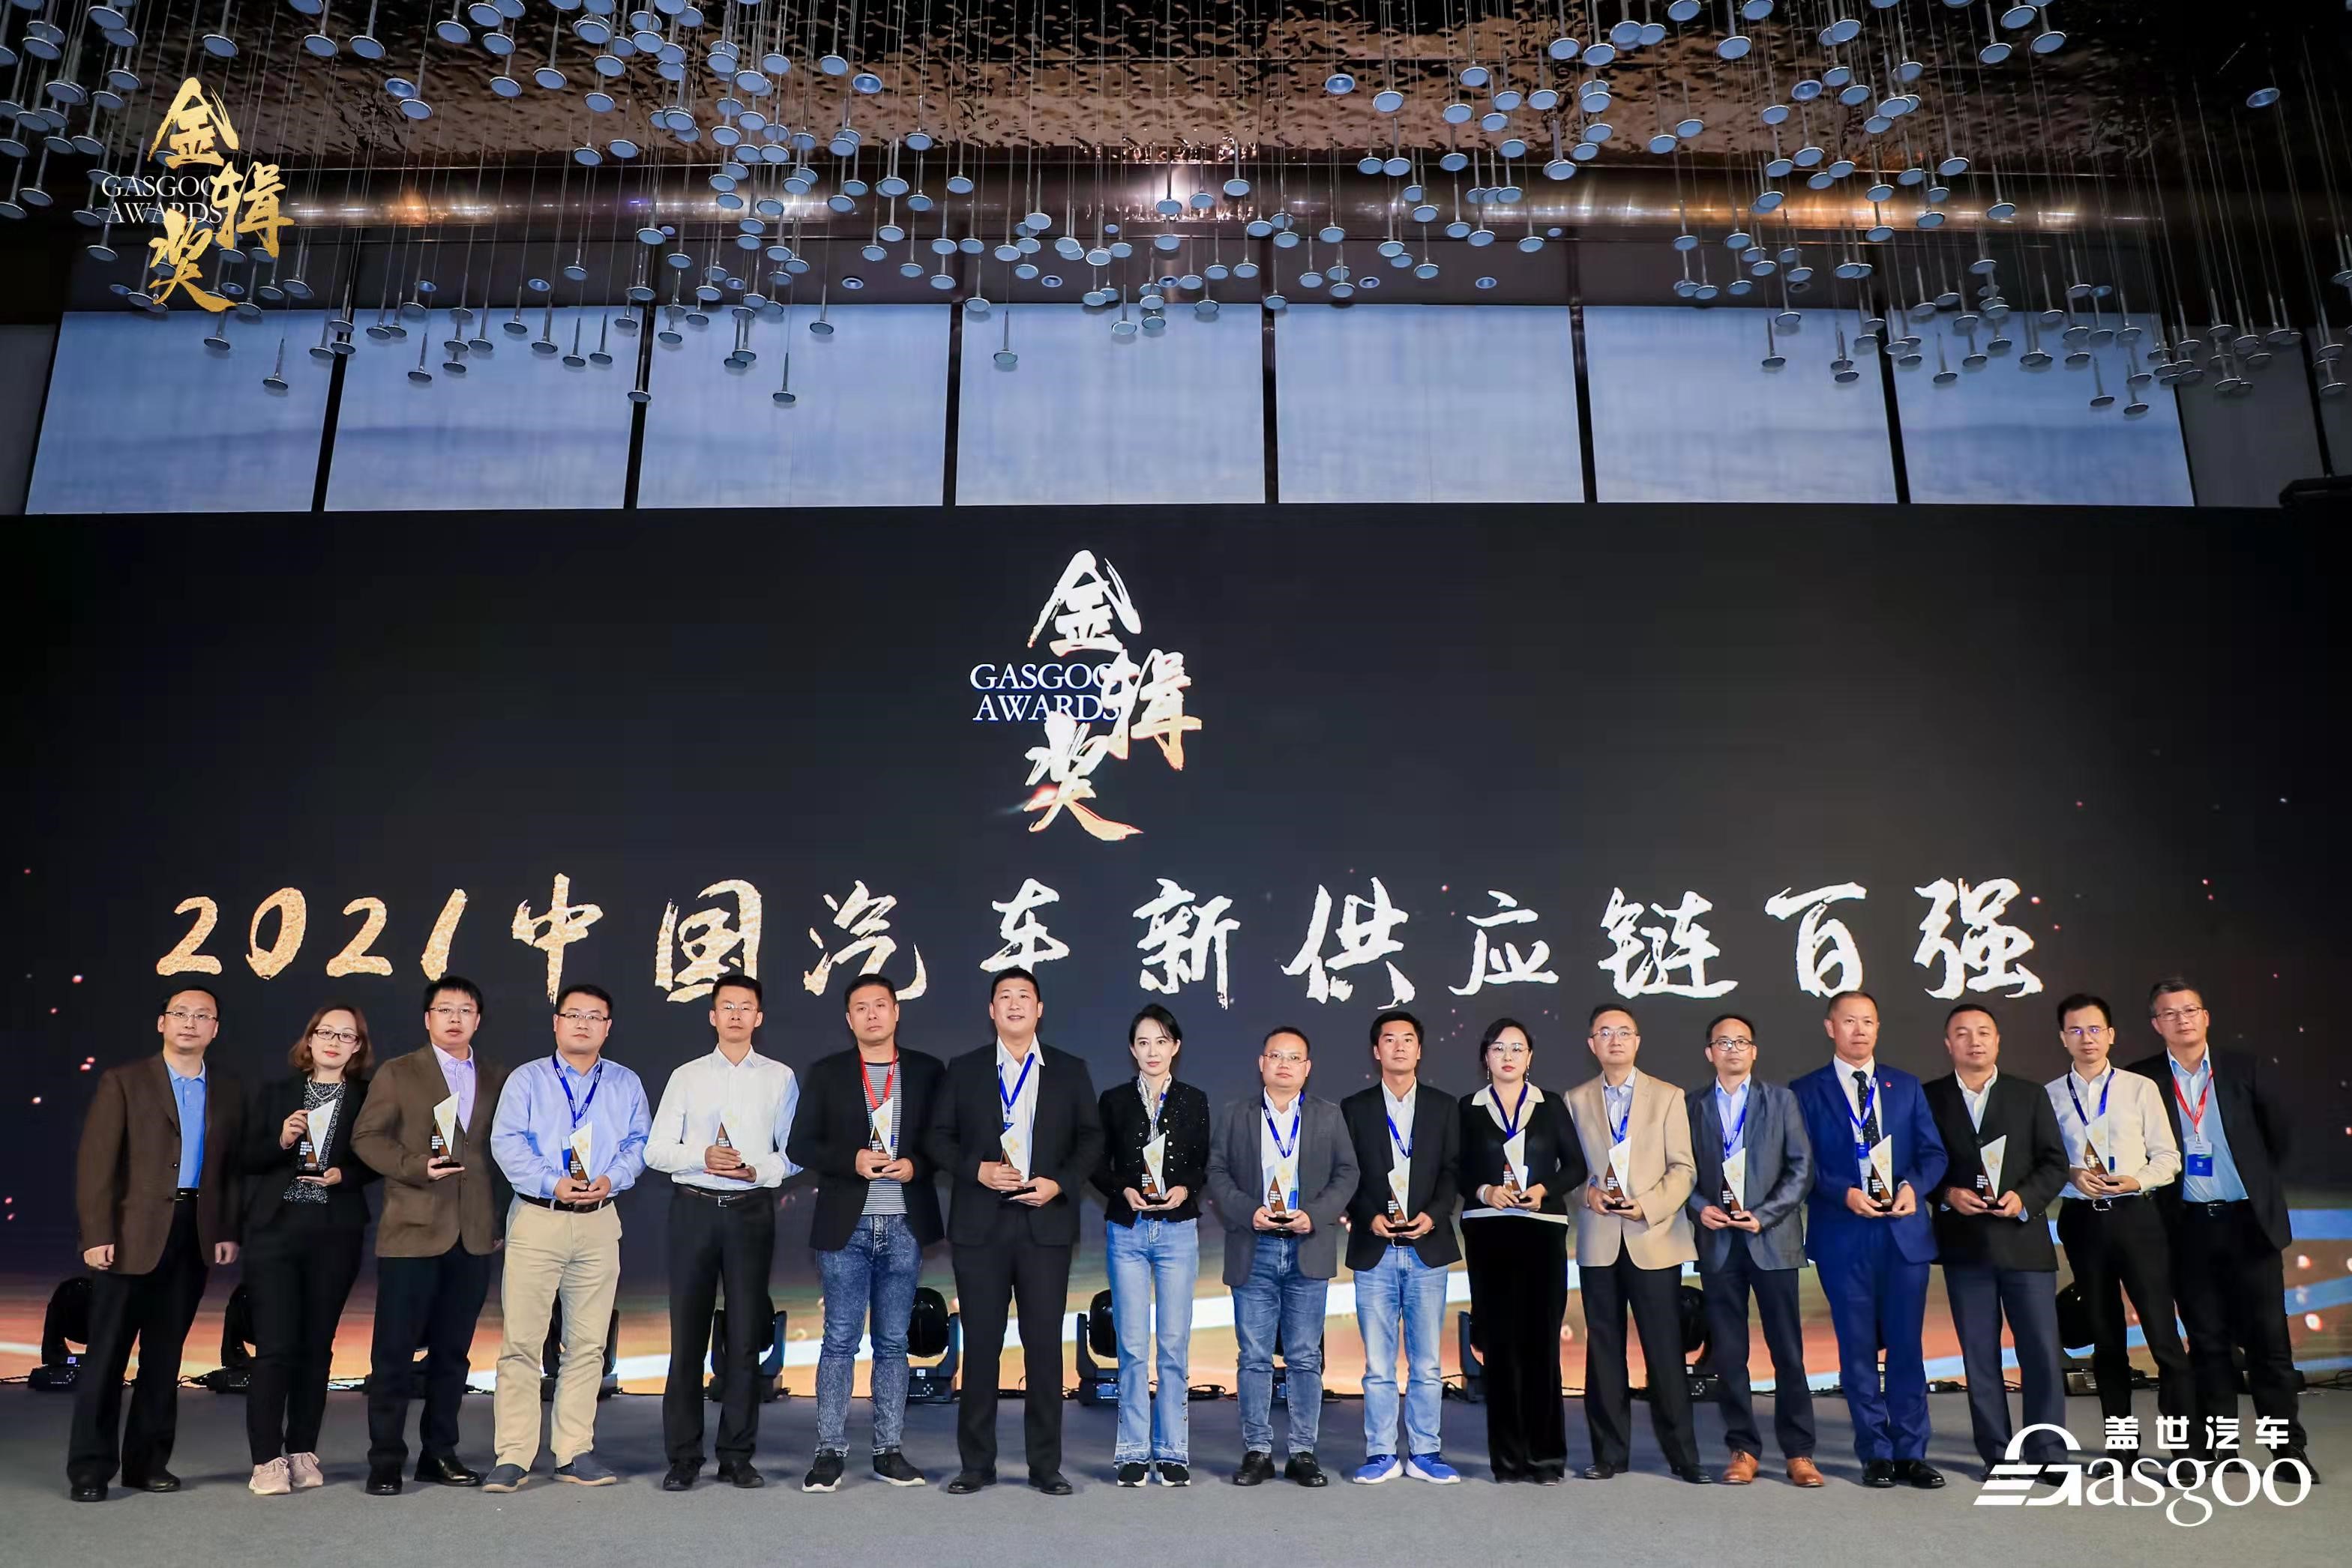 八戒体育在线亚洲体育 车联网操作系统3.0再次获行业肯定  领先技术捧得2021金辑奖